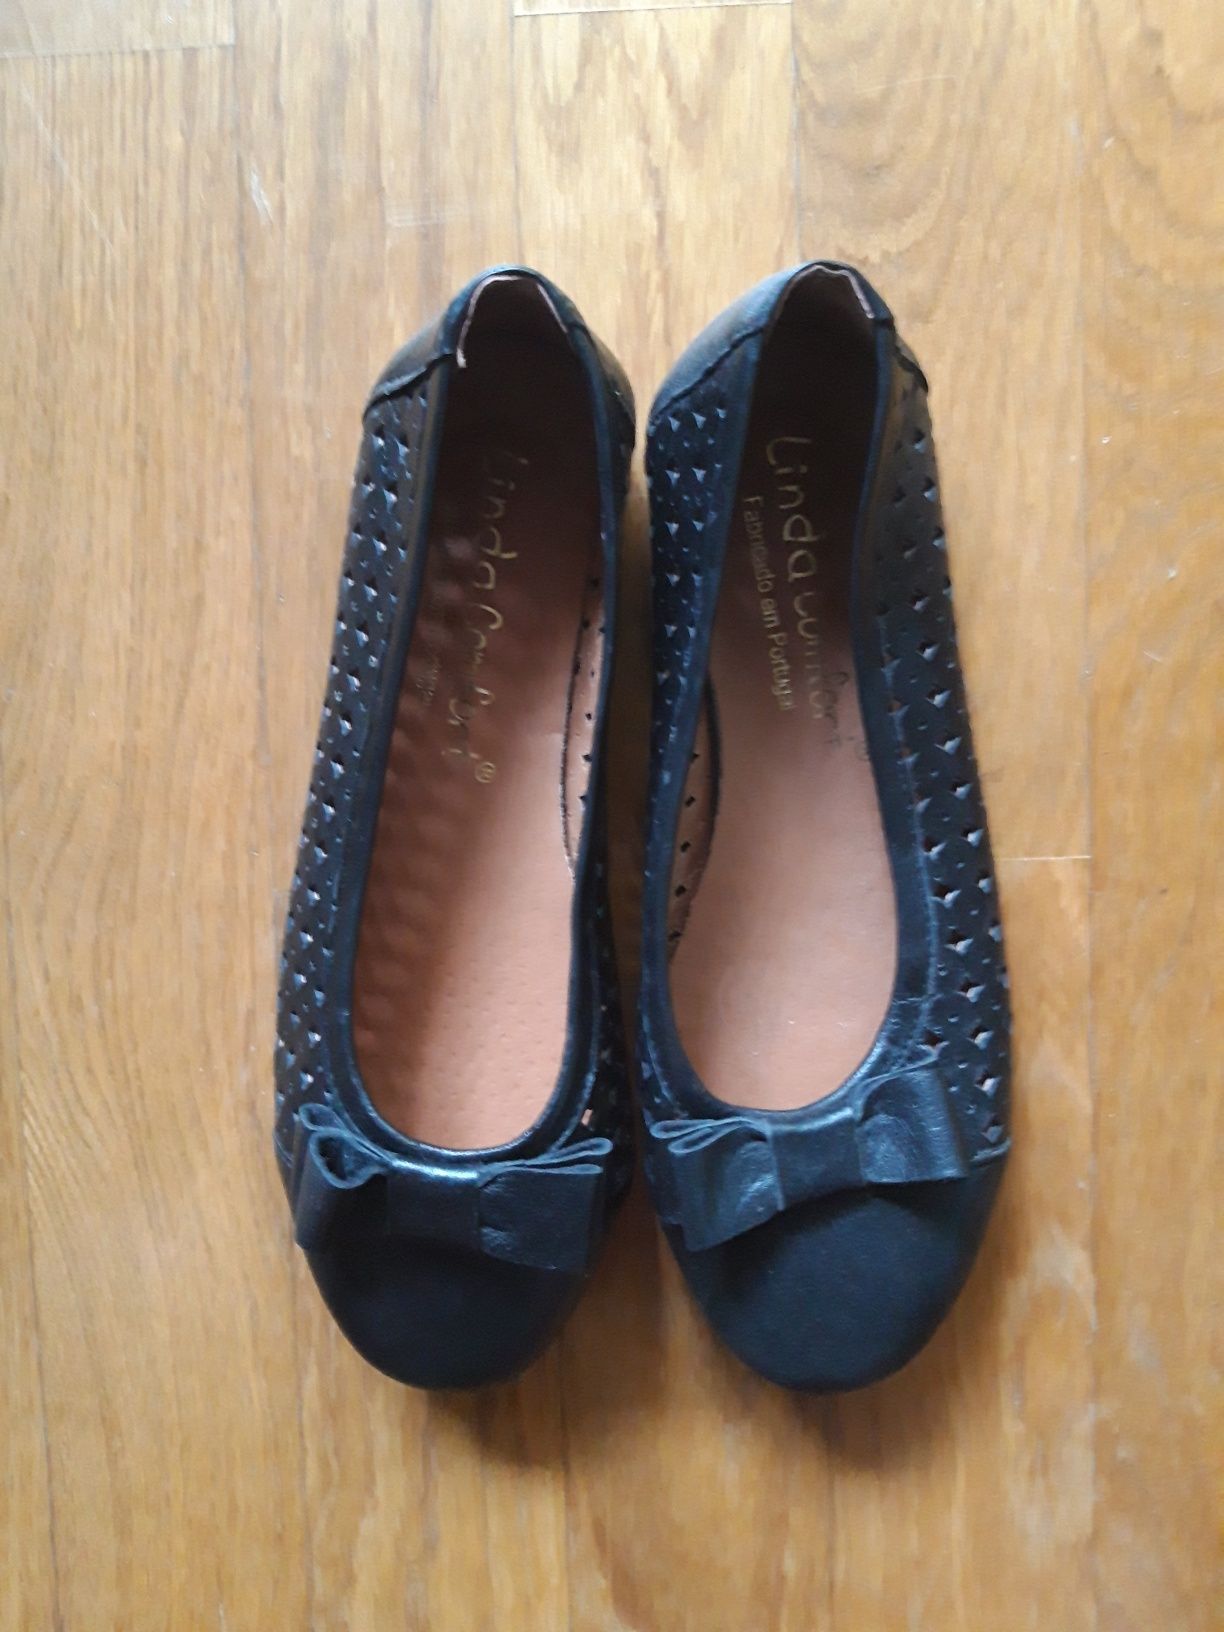 Sapatos rasos de mulher (36) da Linda Comfort (fabricados em Portugal)